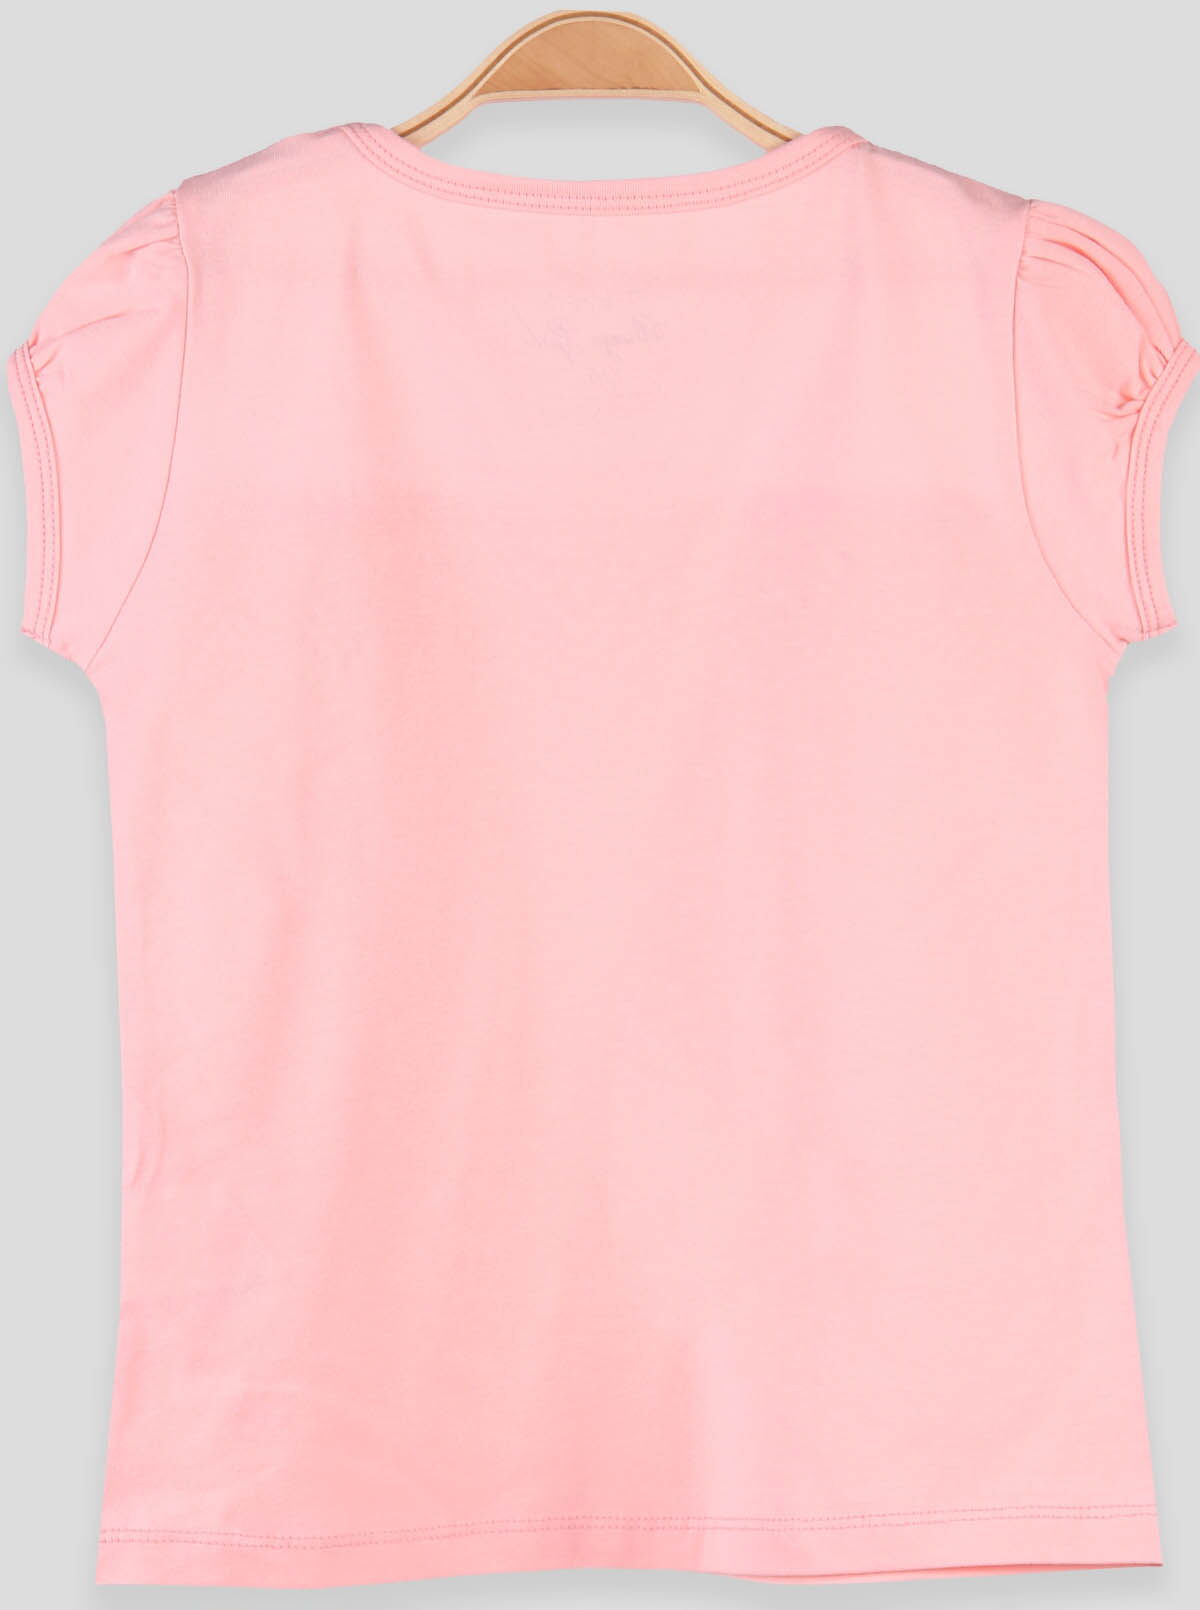 Трикотажная блузка для девочки Breeze персиковая 14516 - фото